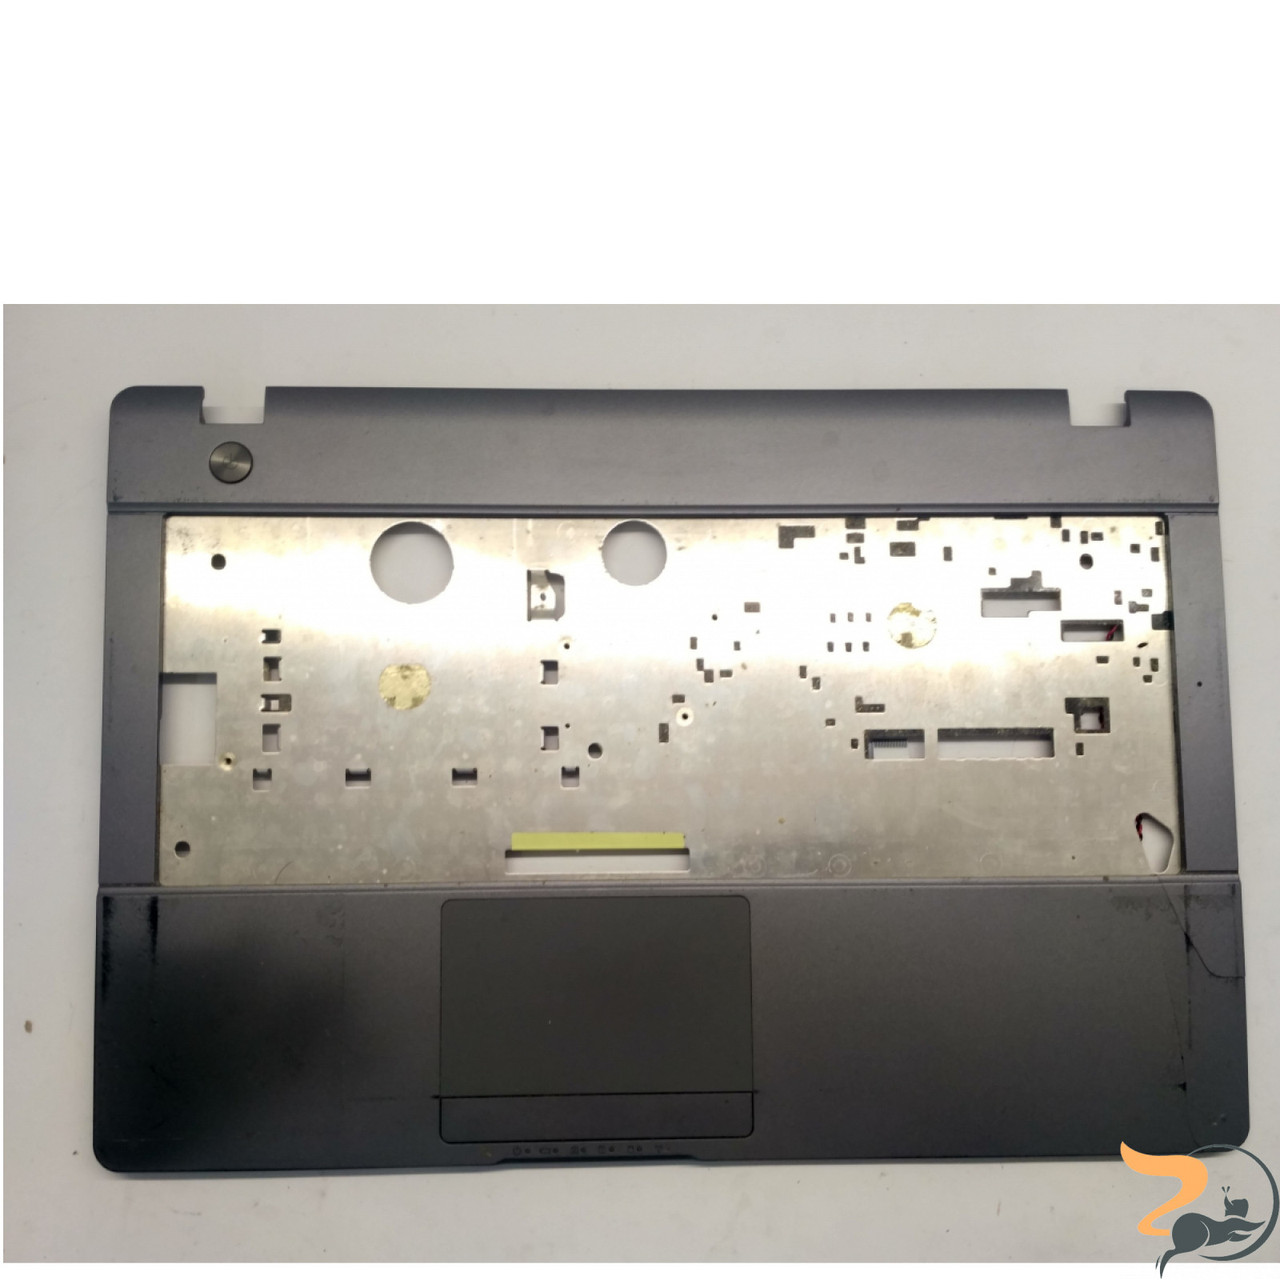 Купить Ноутбук Impression Ultrabook U133-C847